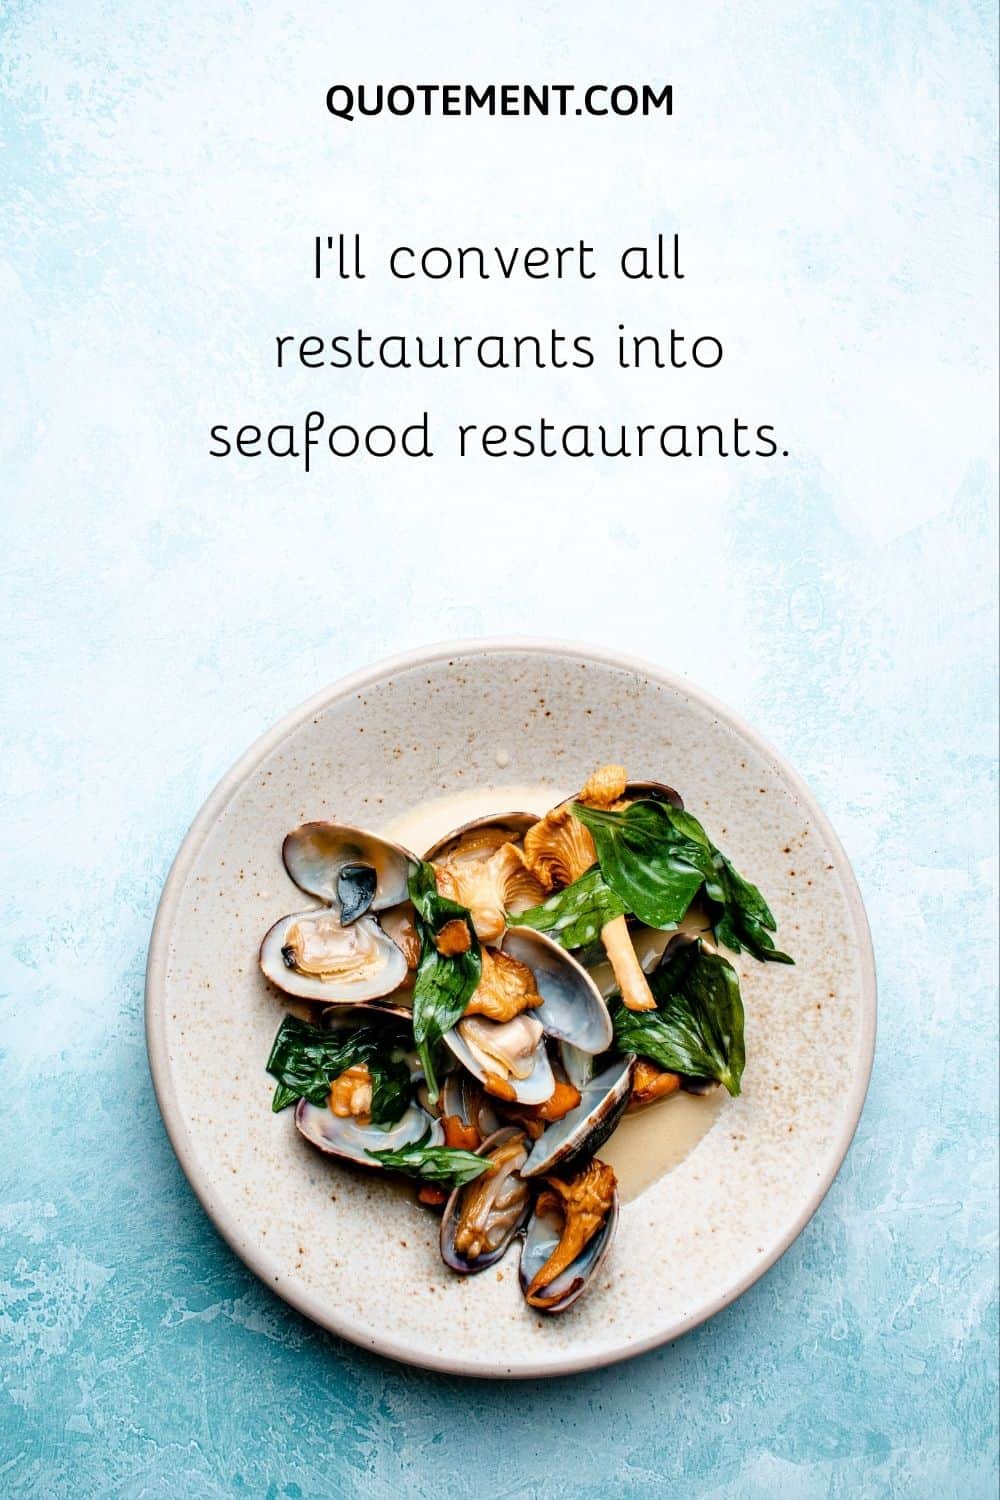 I’ll convert all restaurants into seafood restaurants.